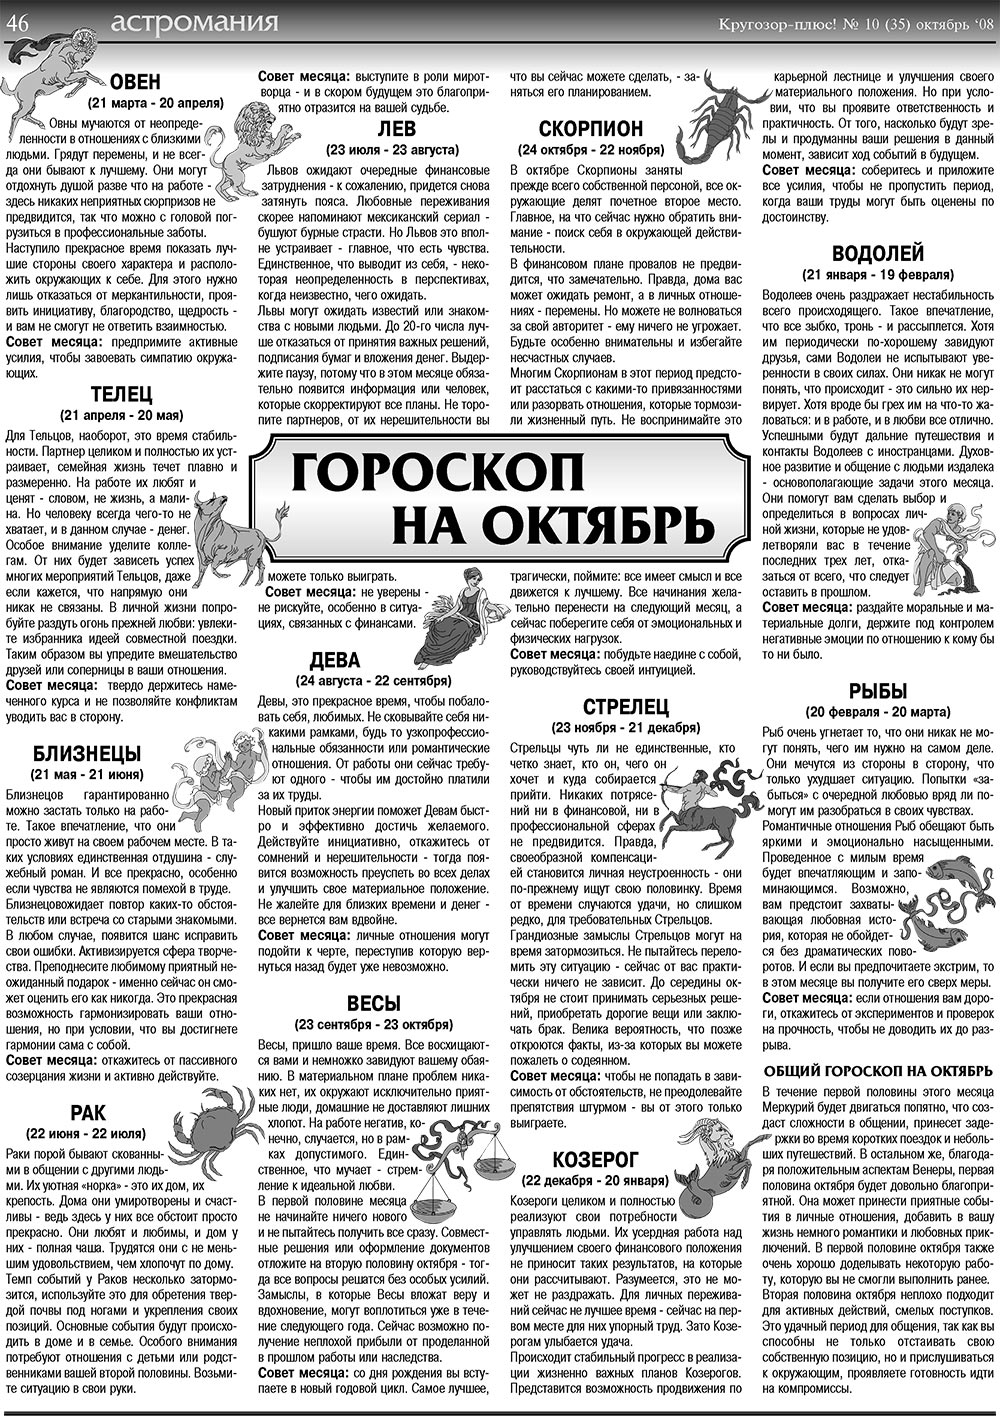 Кругозор плюс!, газета. 2008 №10 стр.46